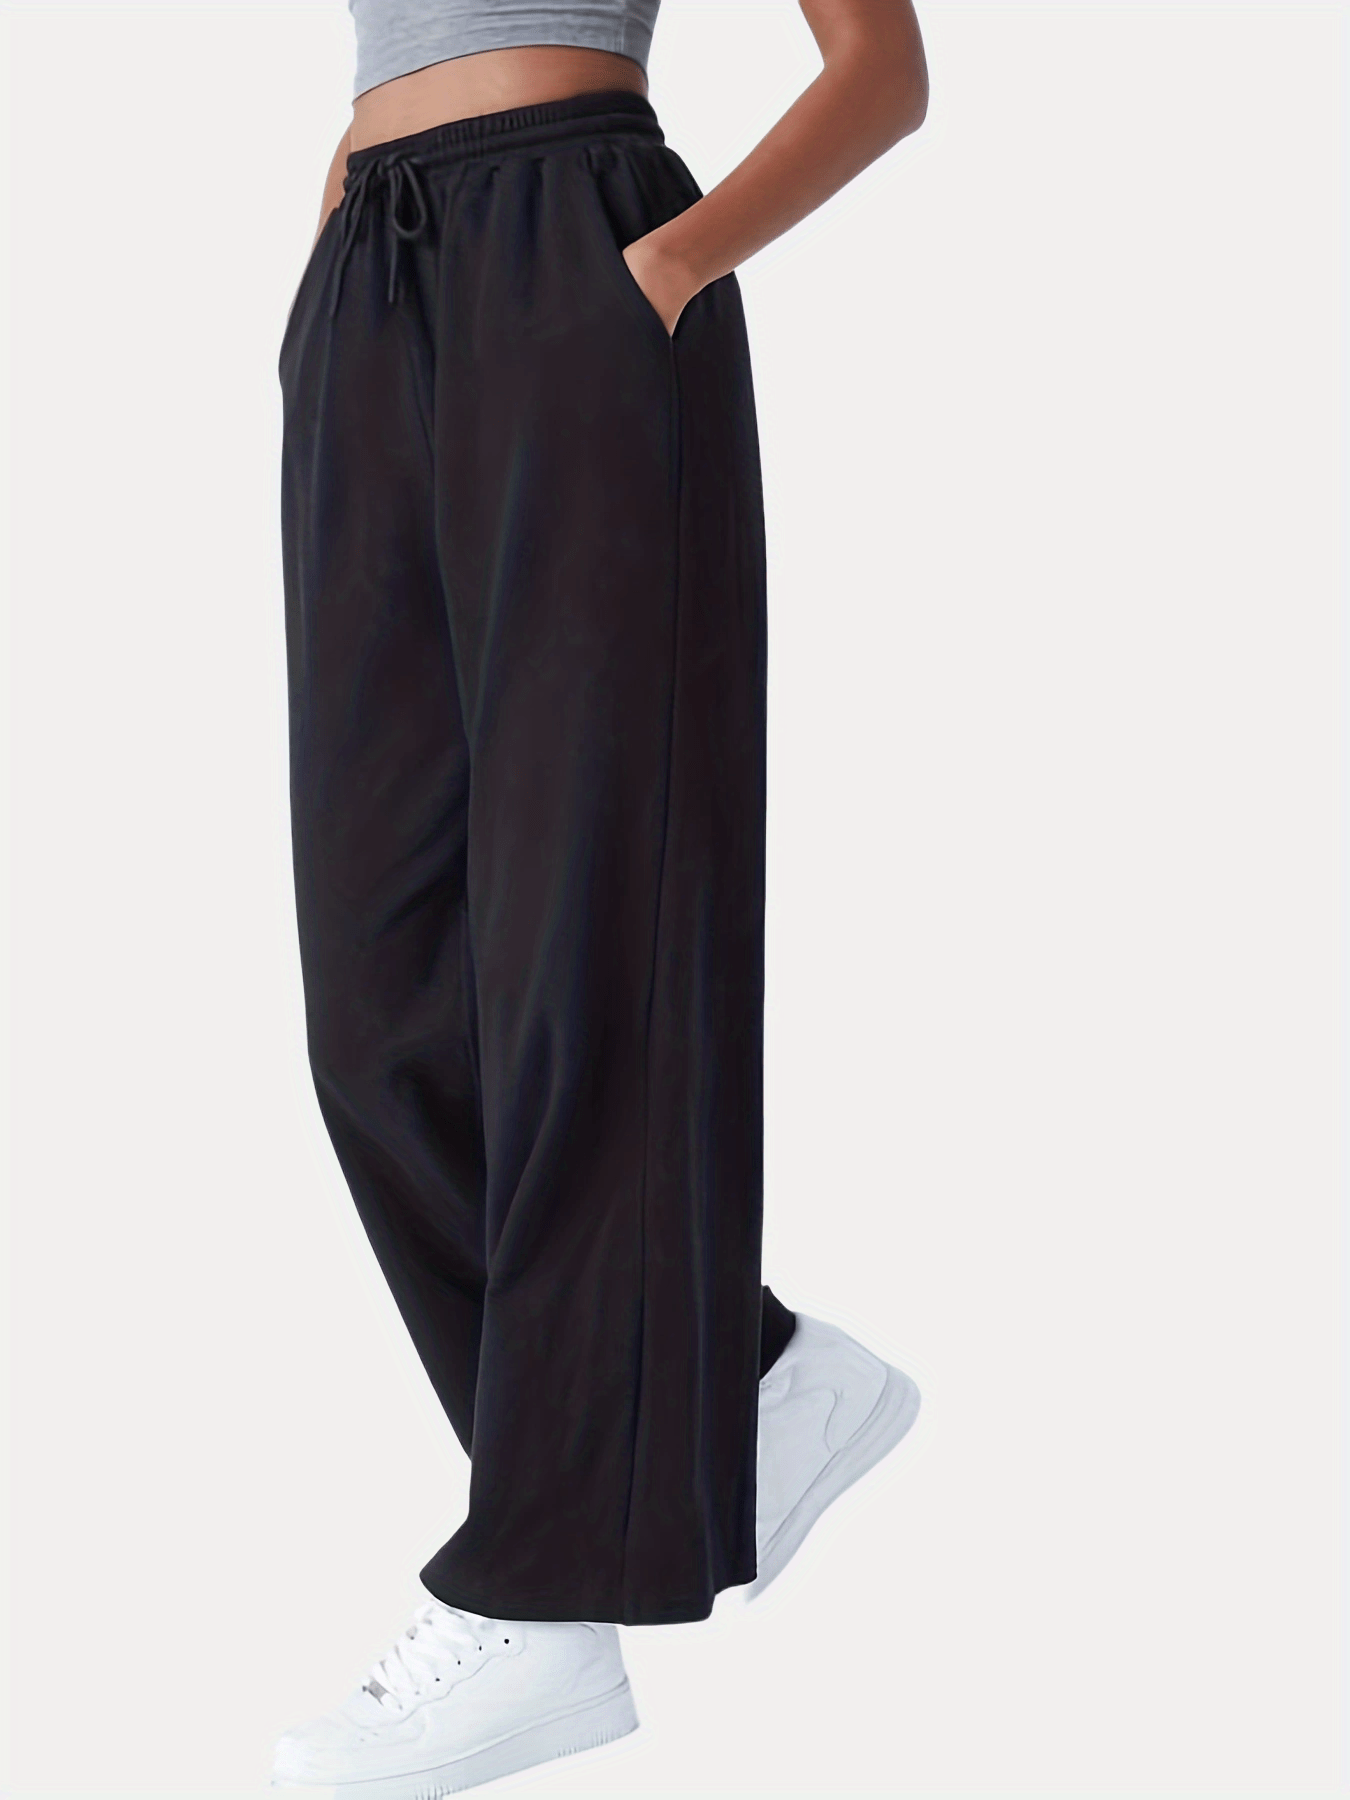 Casual High Waist Pant Loose Sweatpants Woman Trousers Capris Wide Leg Pants  Women Clothes (Color : Black, Size : XX-Large) : : Clothing, Shoes  & Accessories